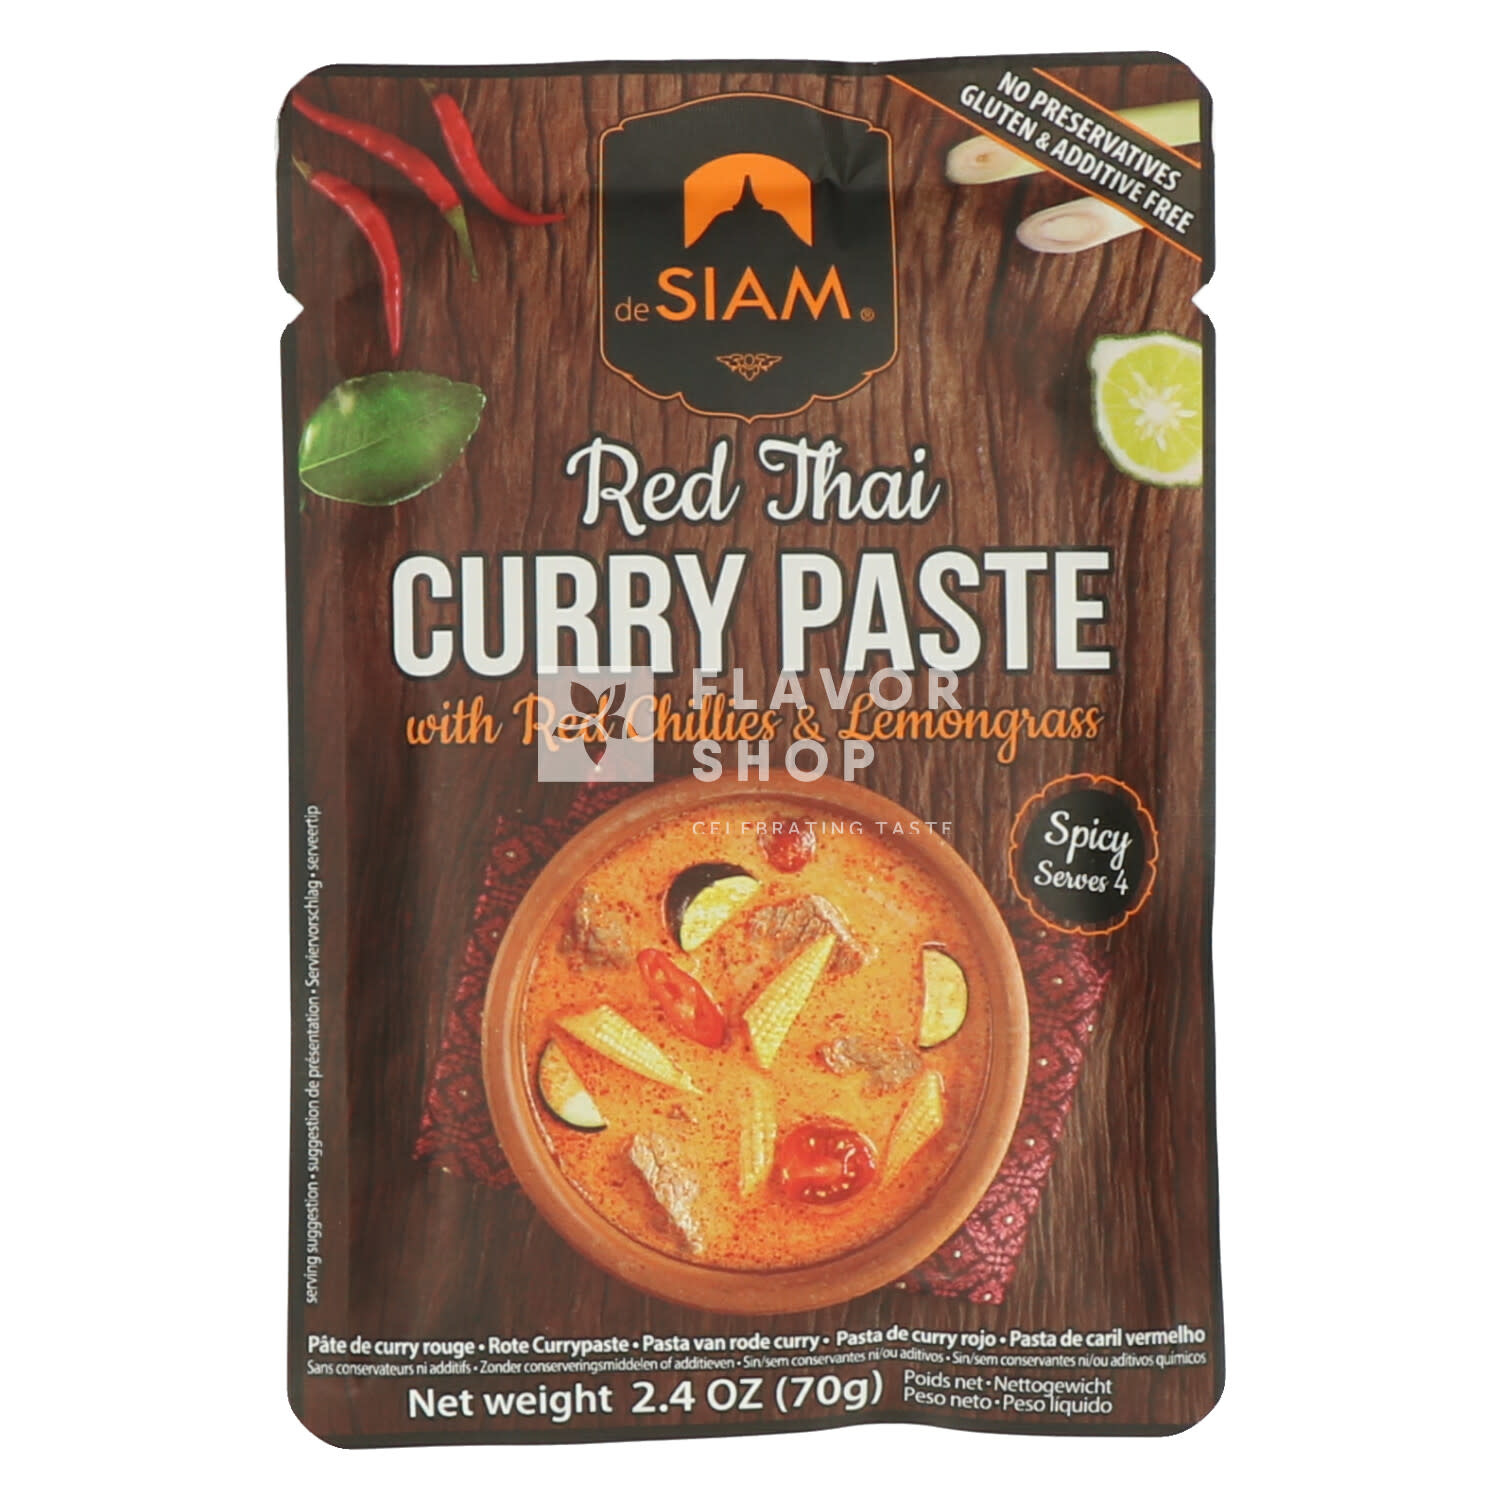 Pâte de curry rouge en sachet - Achetez-la en ligne sur Flavor